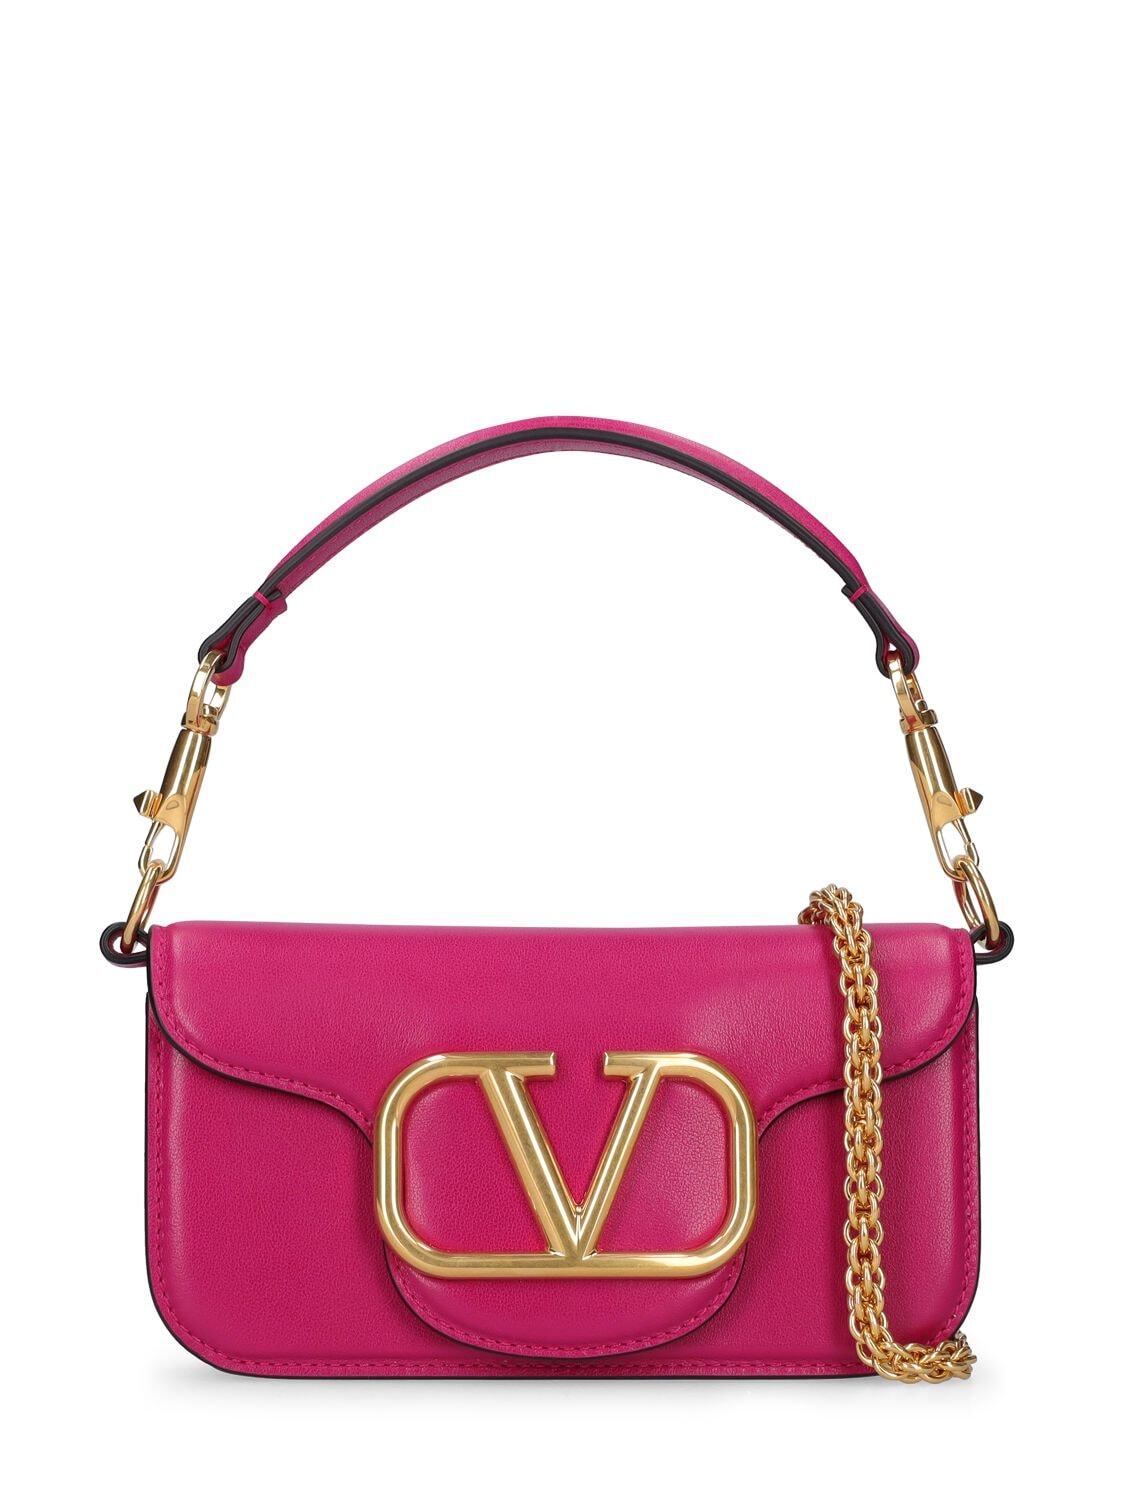 VALENTINO GARAVANI Sm Locò Leather Shoulder Bag in rose / violet